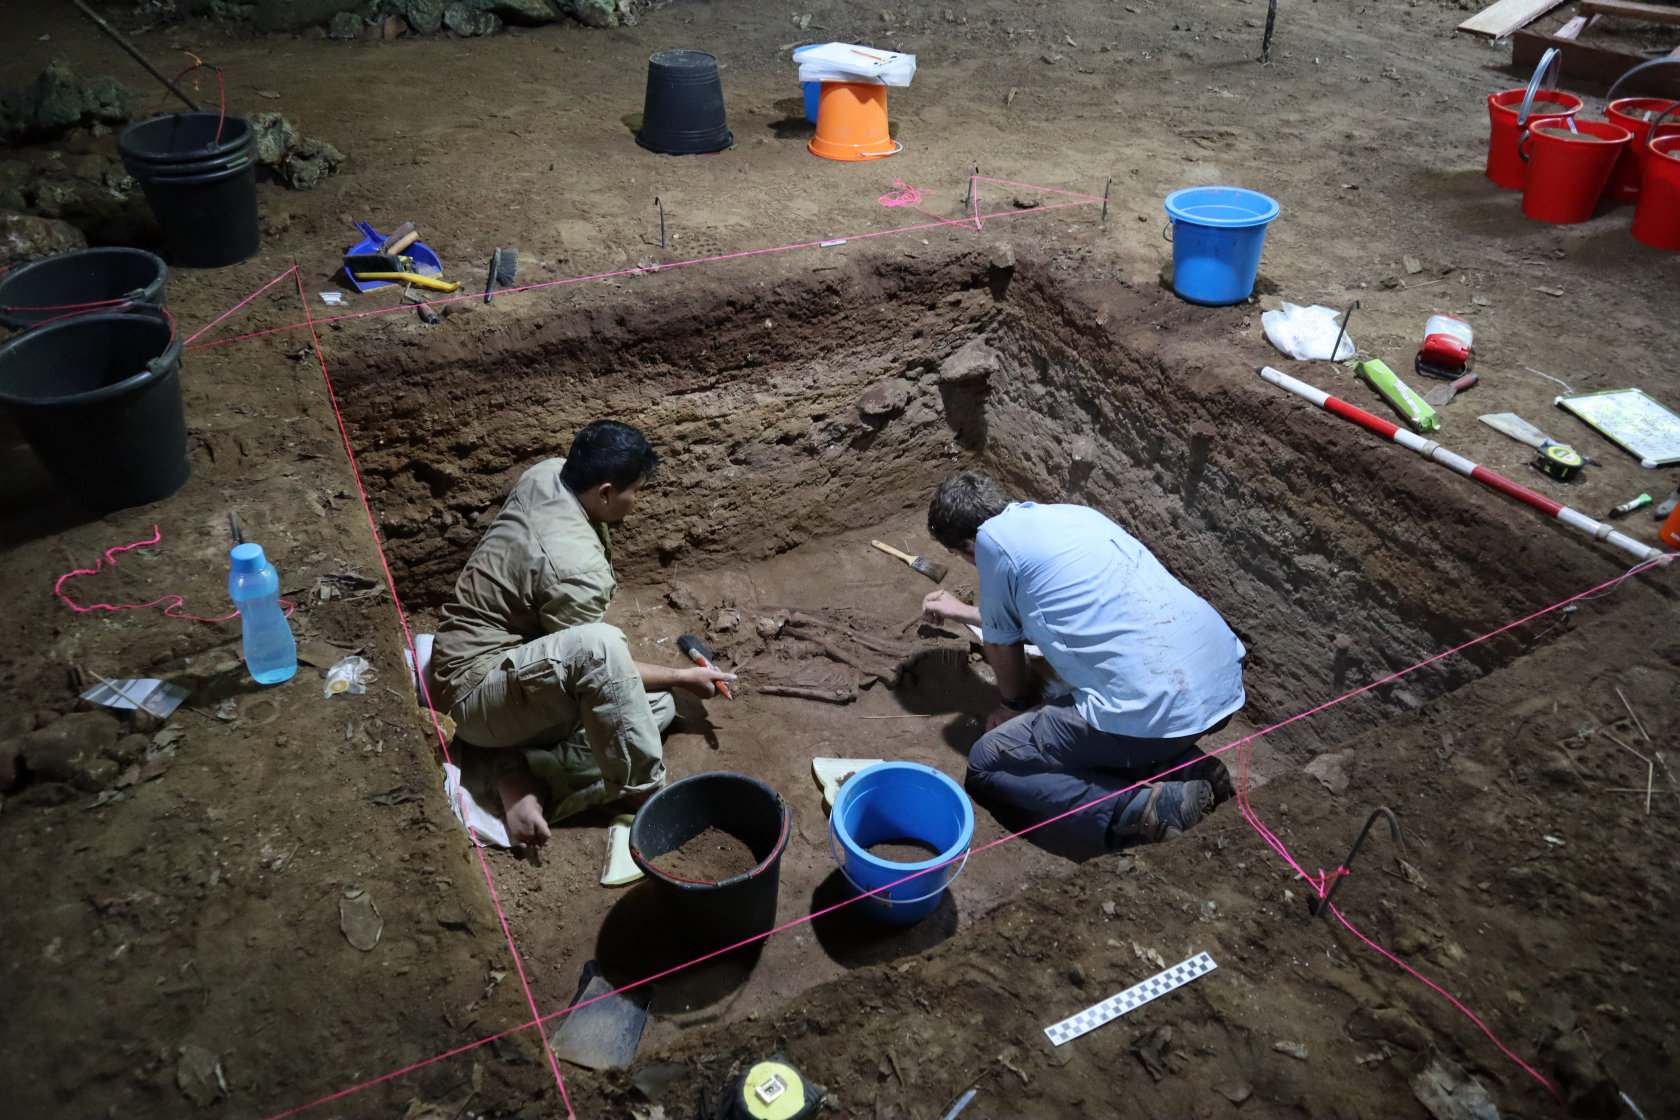 Arkeolog nuju damel di guha Liang Tebo di daerah terpencil Sangkulirang-Mangkalihat, Kalimantan Timur. Poto: Tim Maloney